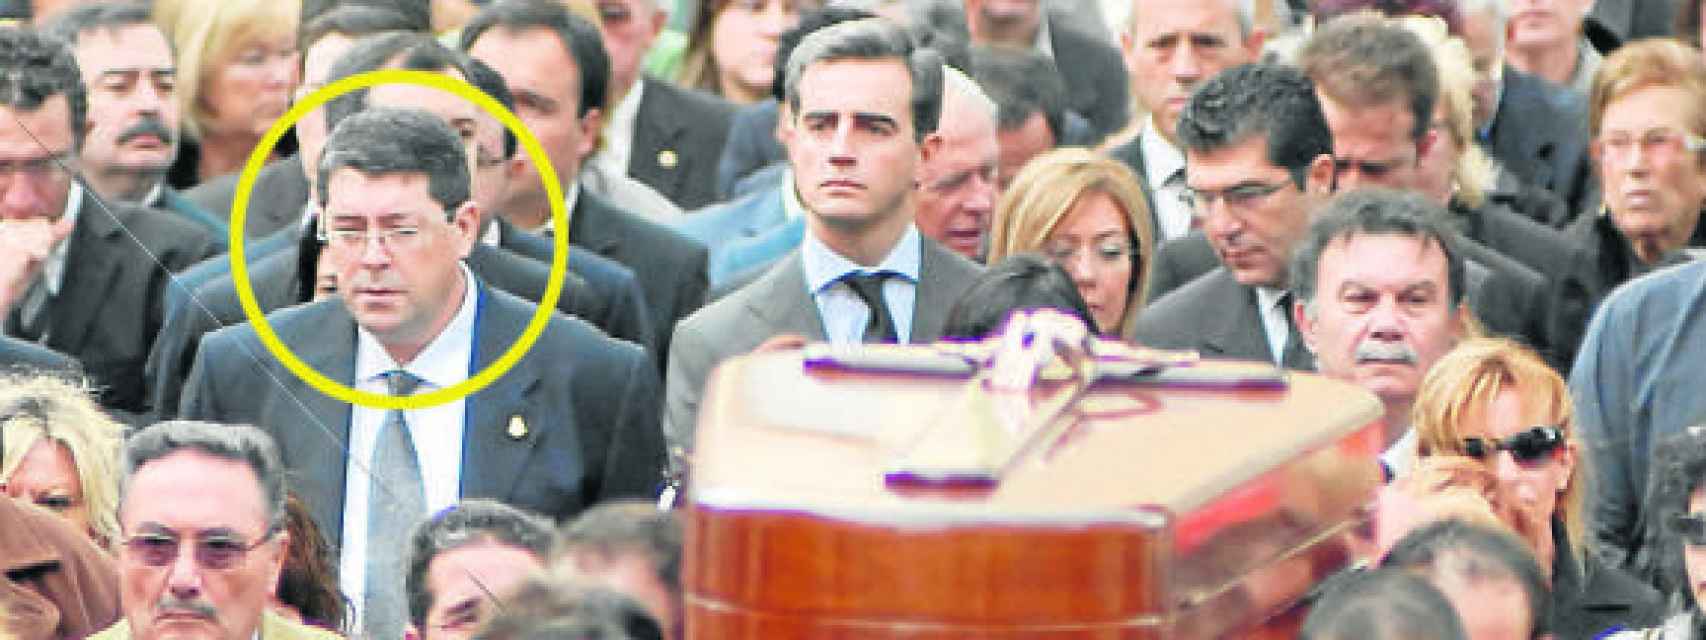 Juan Cano participó en el funeral de su antecesor en la alcaldía de Polop.